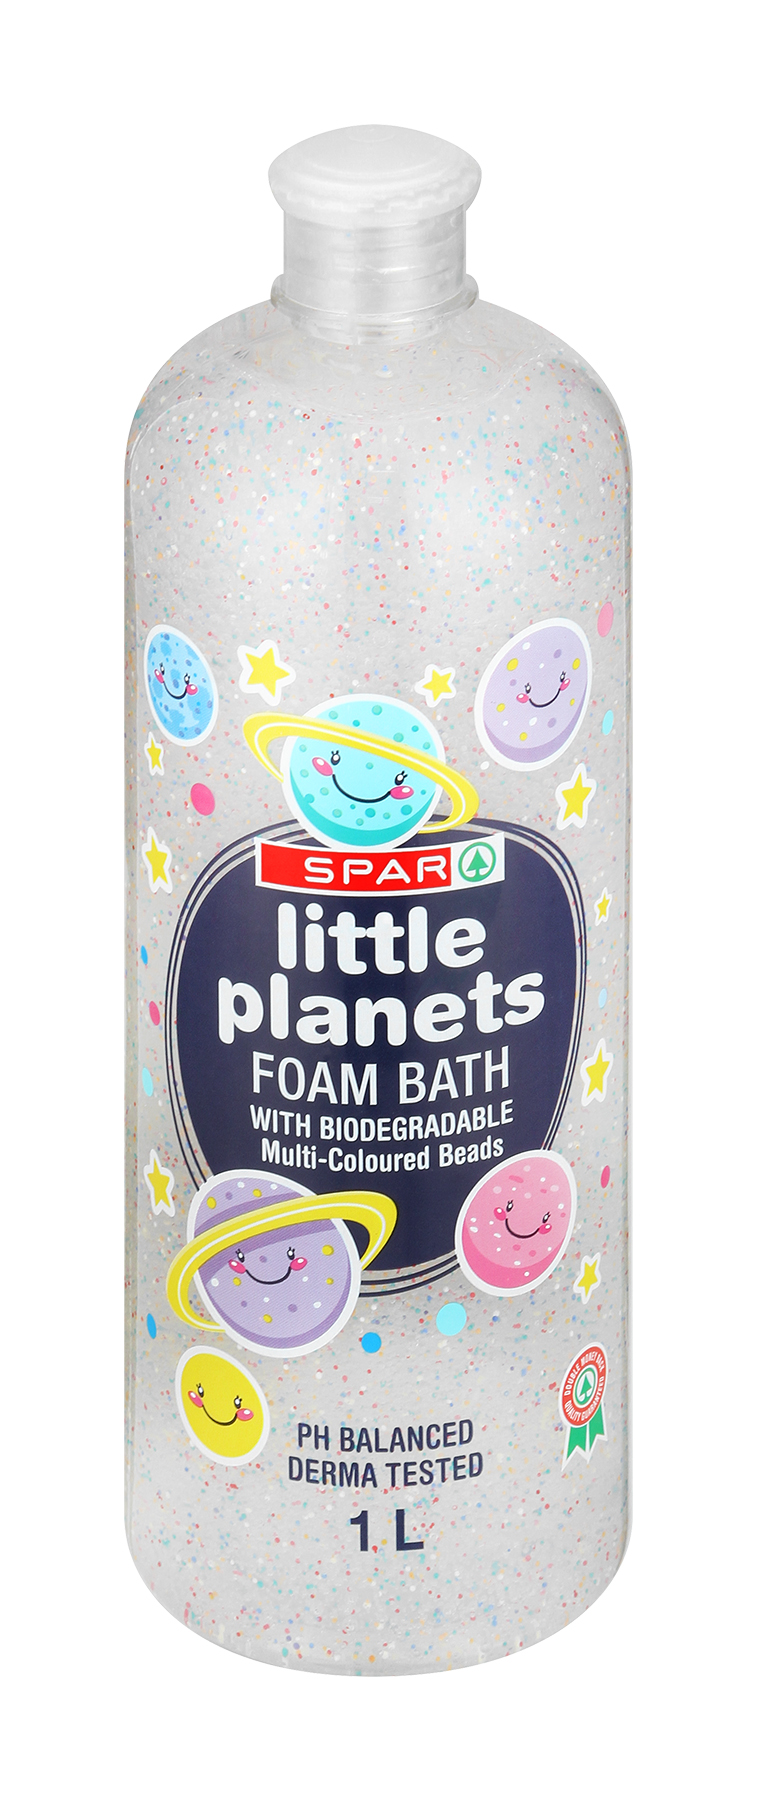 foam bath little planets